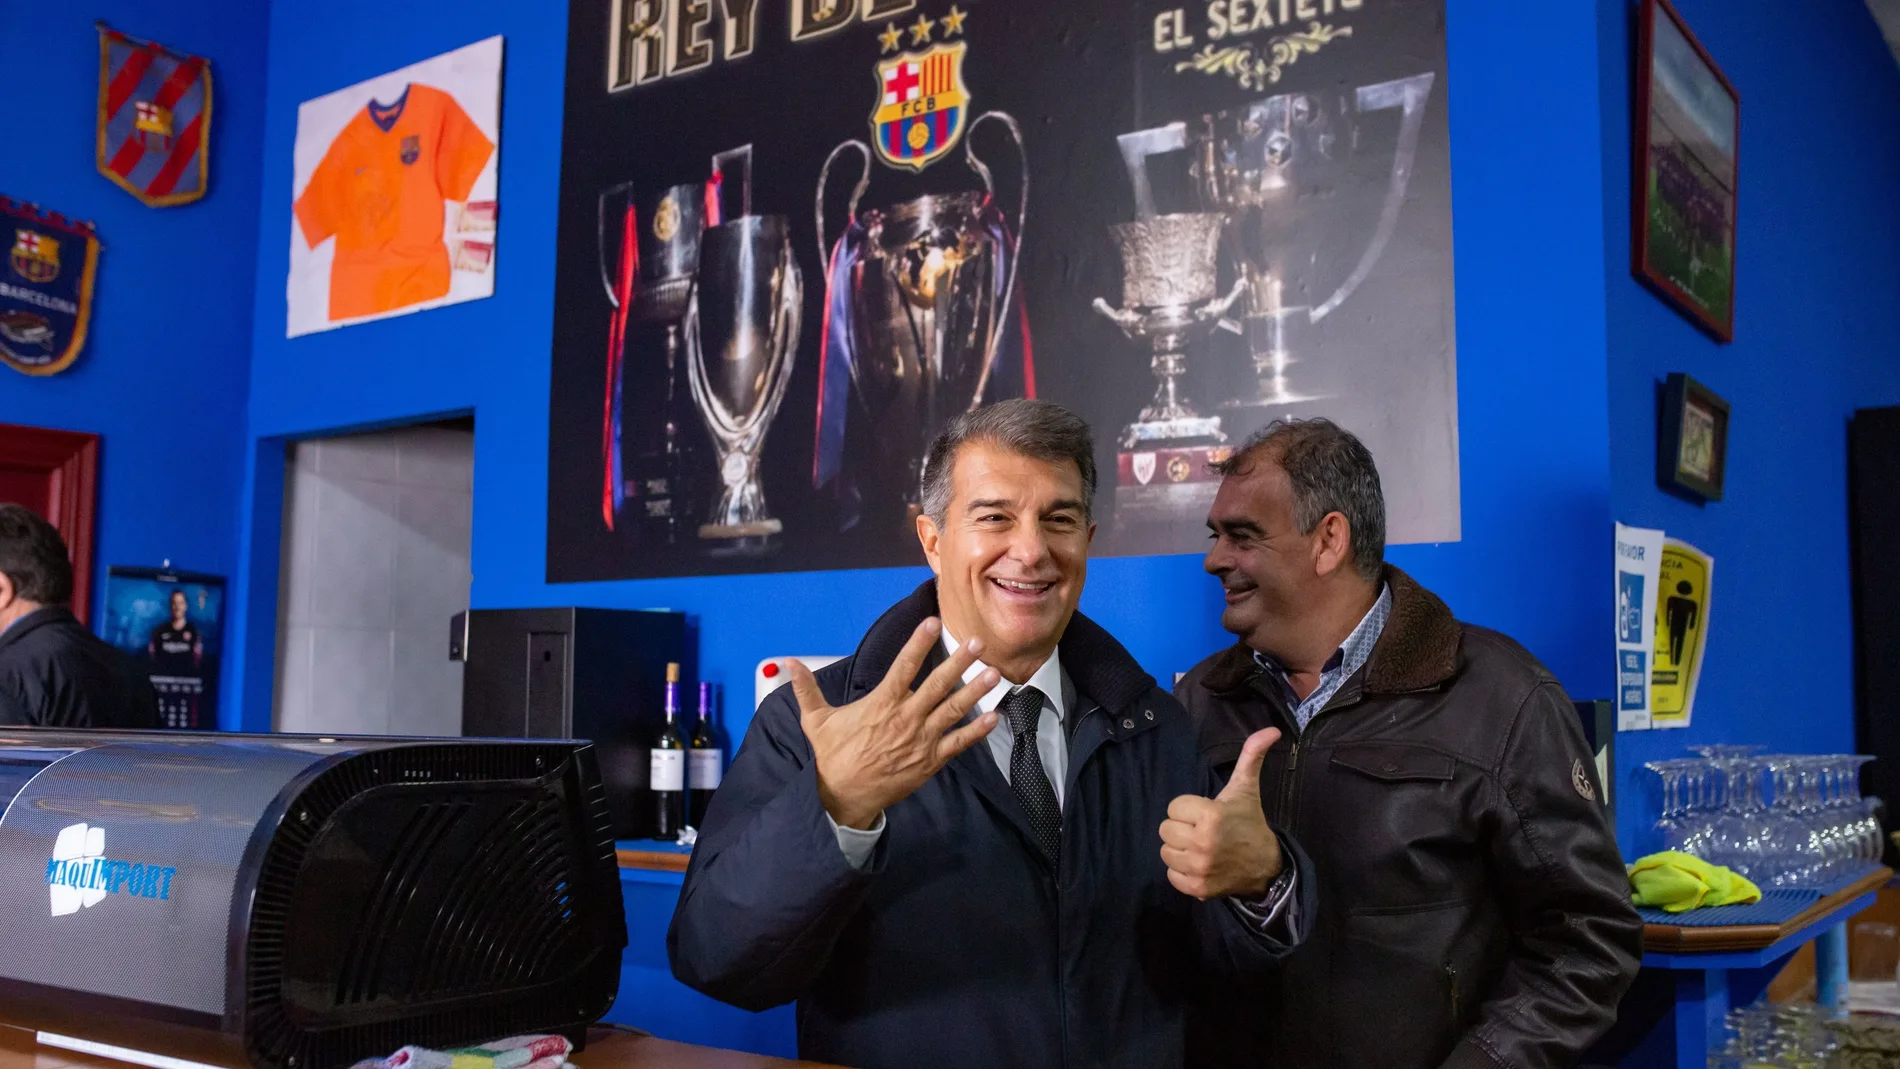 El candidato Joan Laporta, en una visita a la peña barcelonista malagueña de Casabermeja